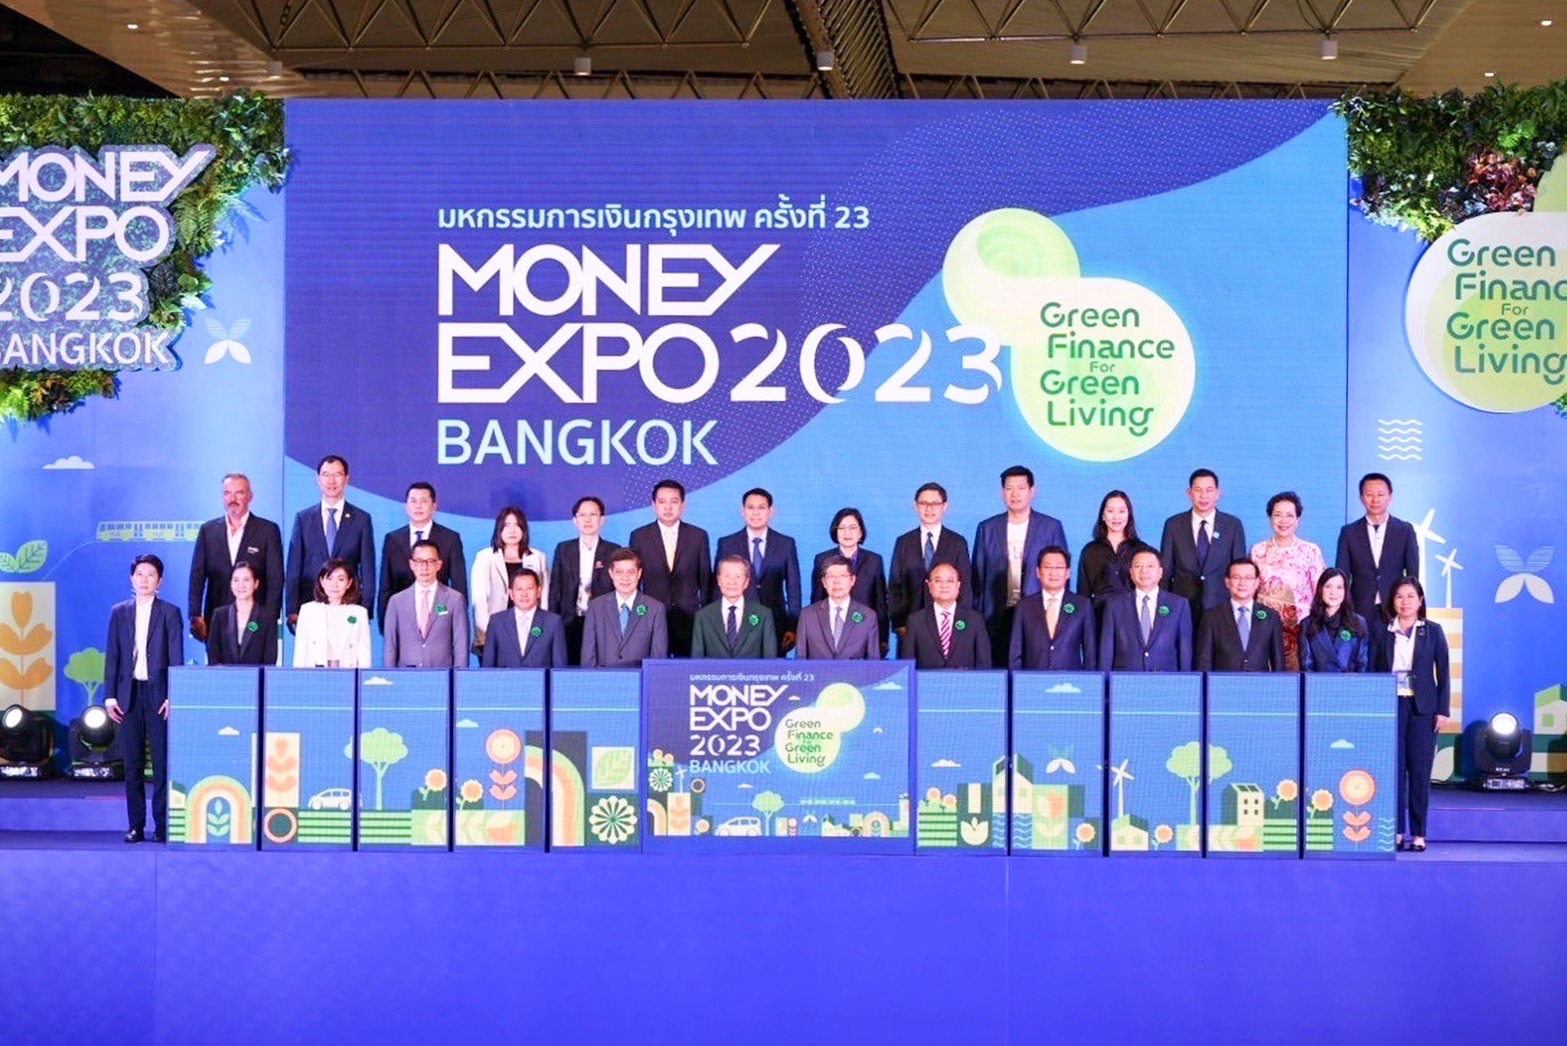 กรุงเทพประกันภัยจัดโปรโมชันและของสมนาคุณสุดคุ้มในงาน Money Expo 2023 ครั้งที่ 23